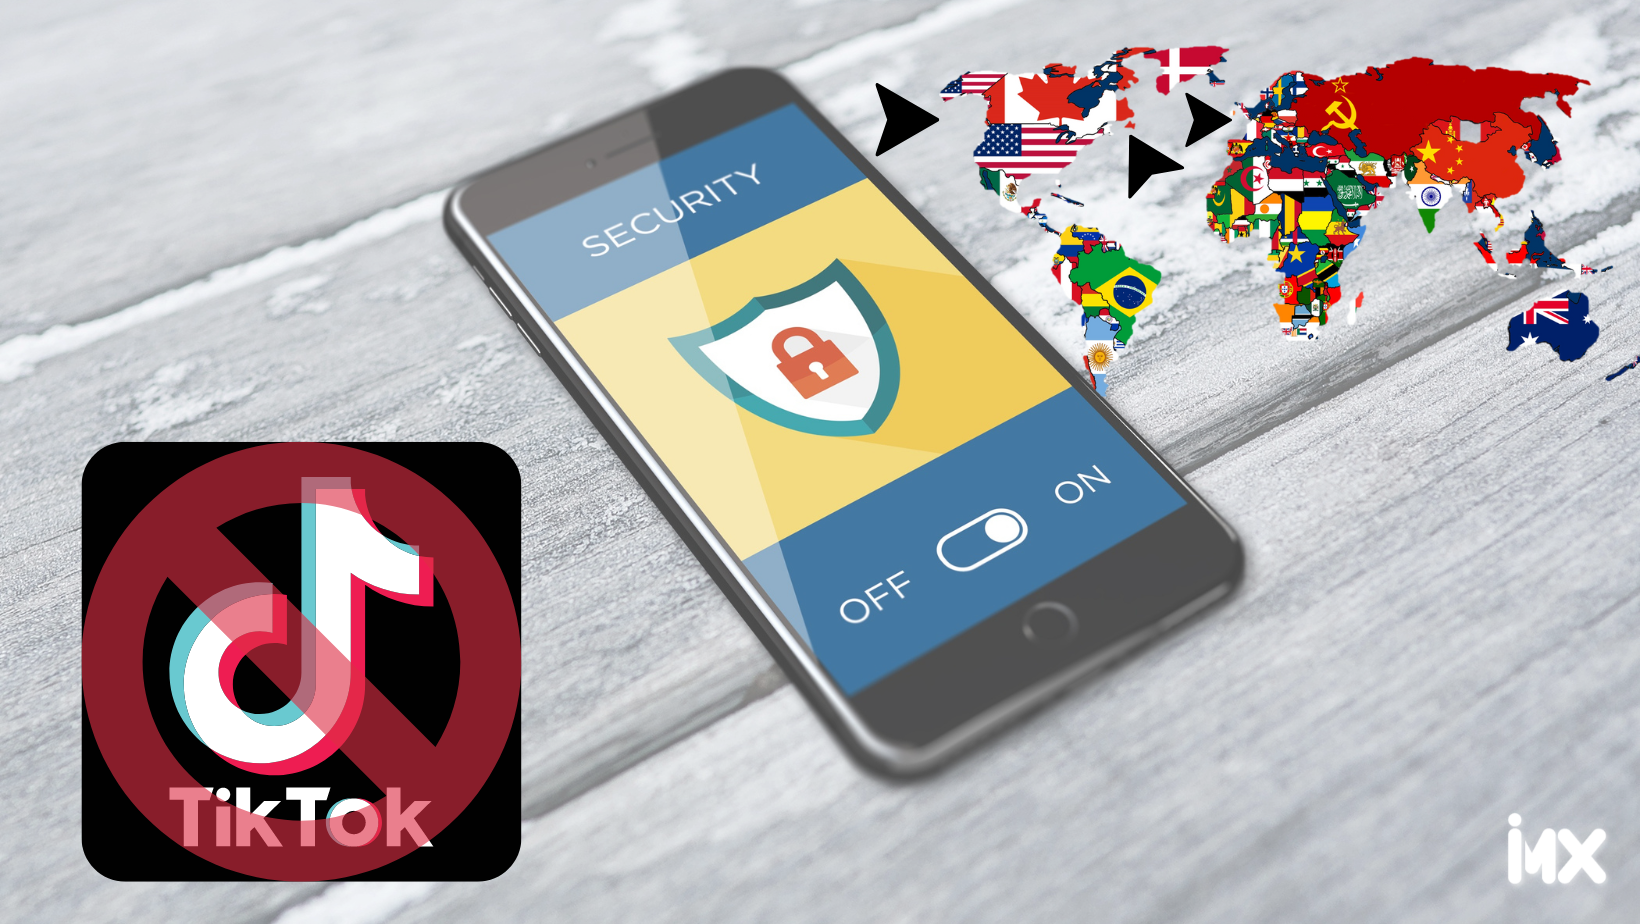 EU, Canadá y la Unión Europea prohíben TikTok en oficinas gubernamentales por temor vigilancia de China